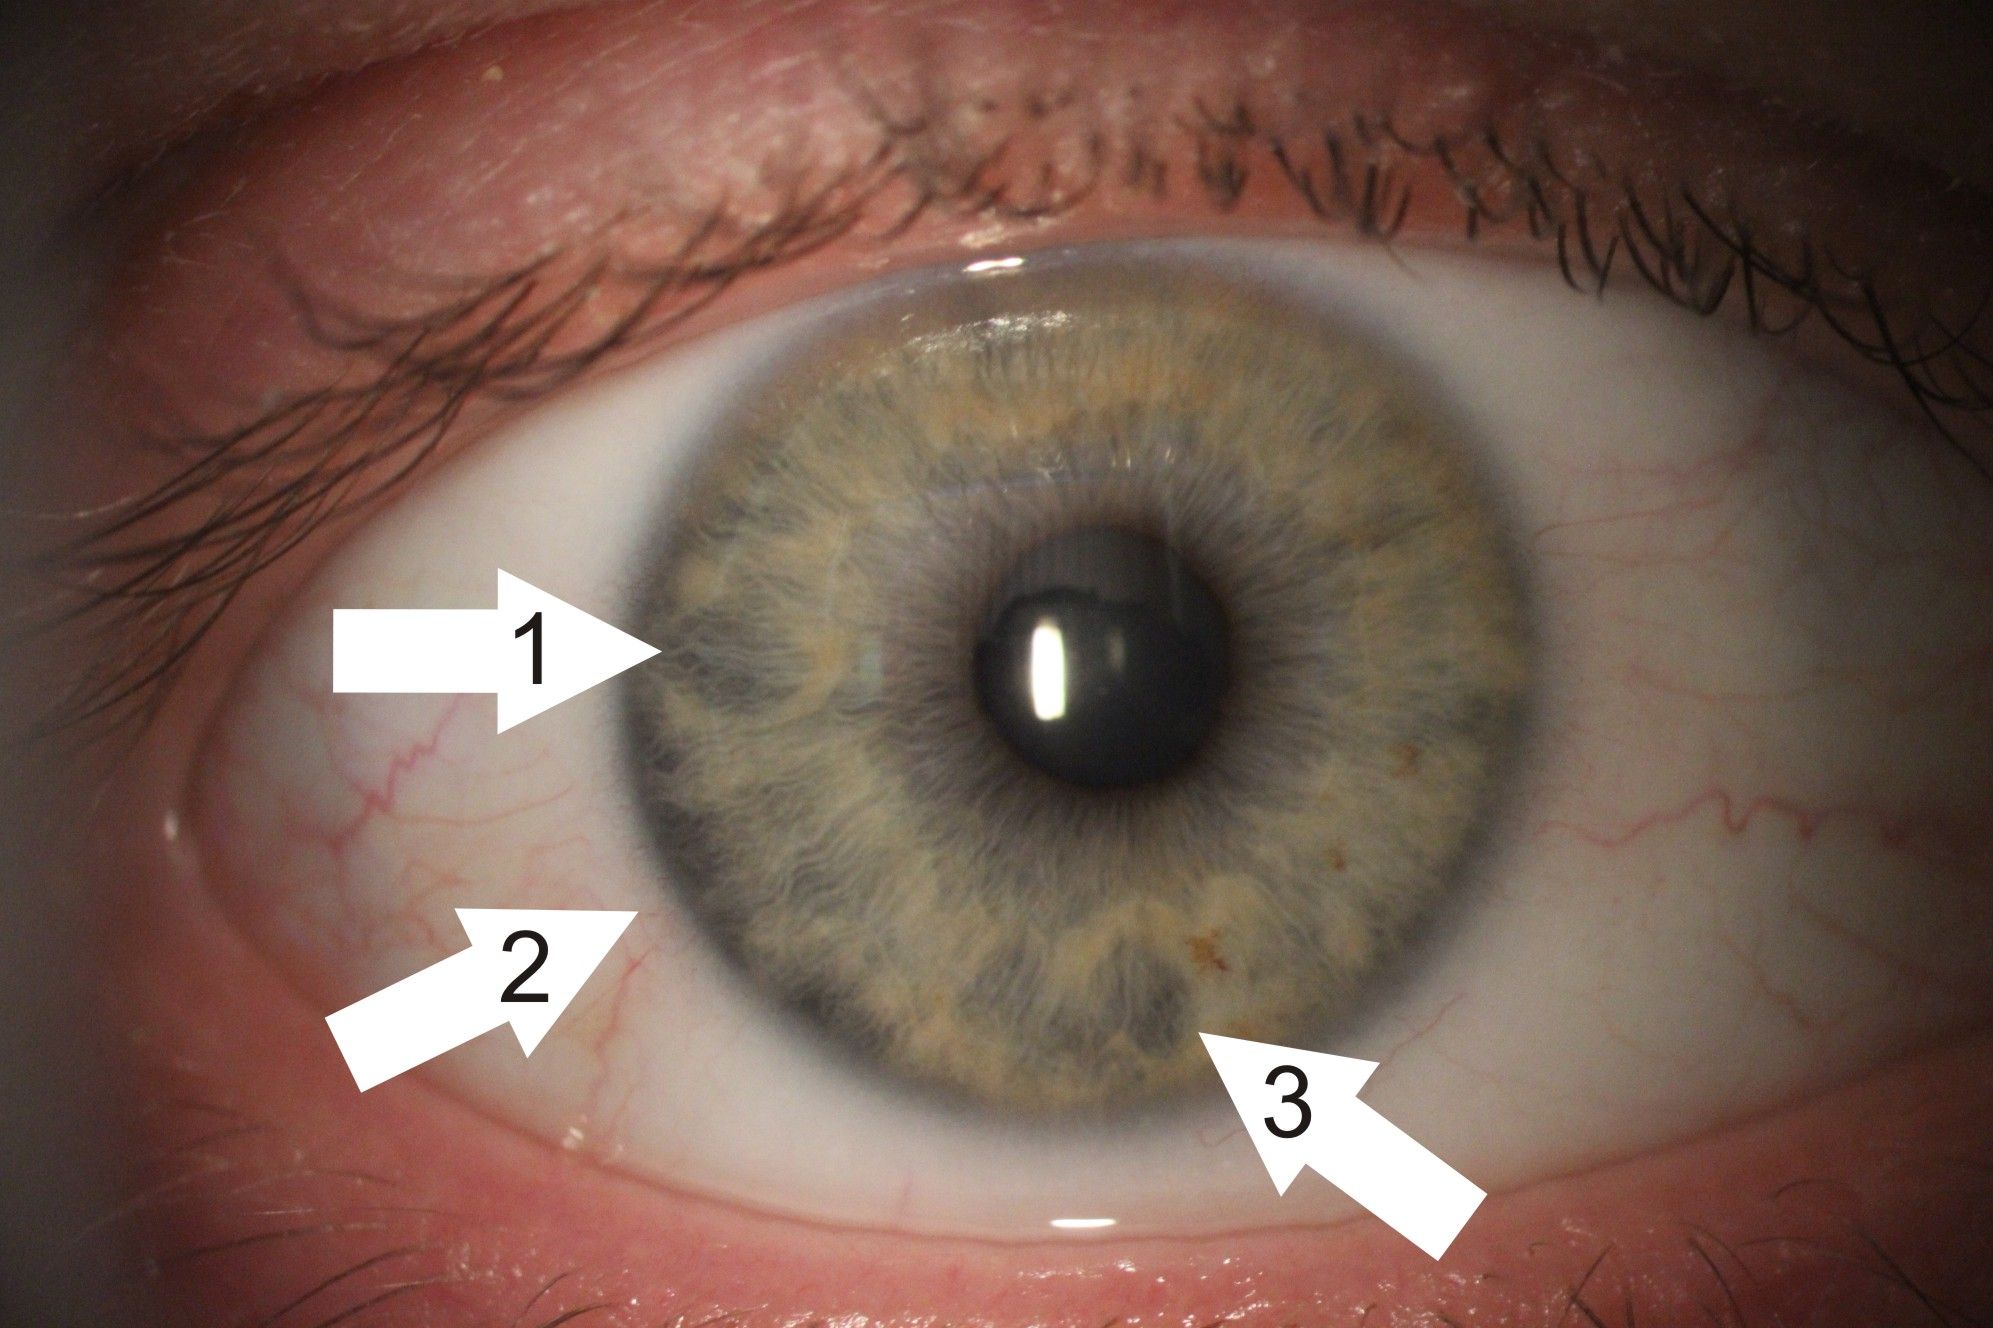 Zdjęcie tęczówki oka. Są na nim zaznaczone trzy białe strzałki wskazujące poszczególne miejsca na tęczówce. 